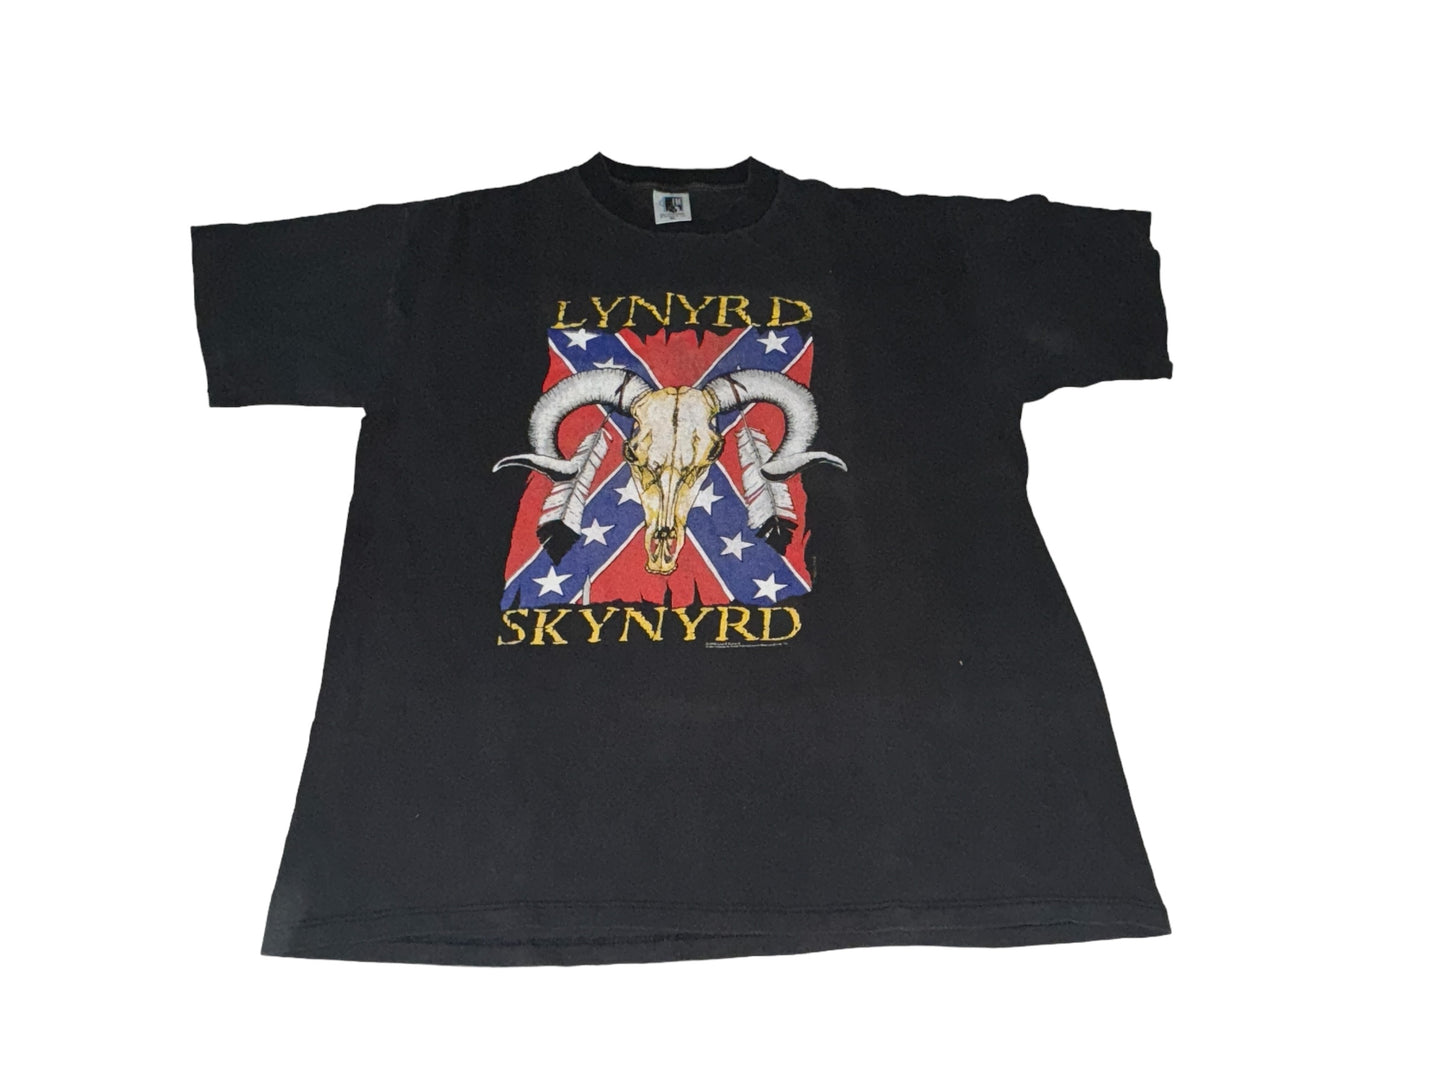 Vintage 1994 Lynyrd Skynyrd T-Shirt